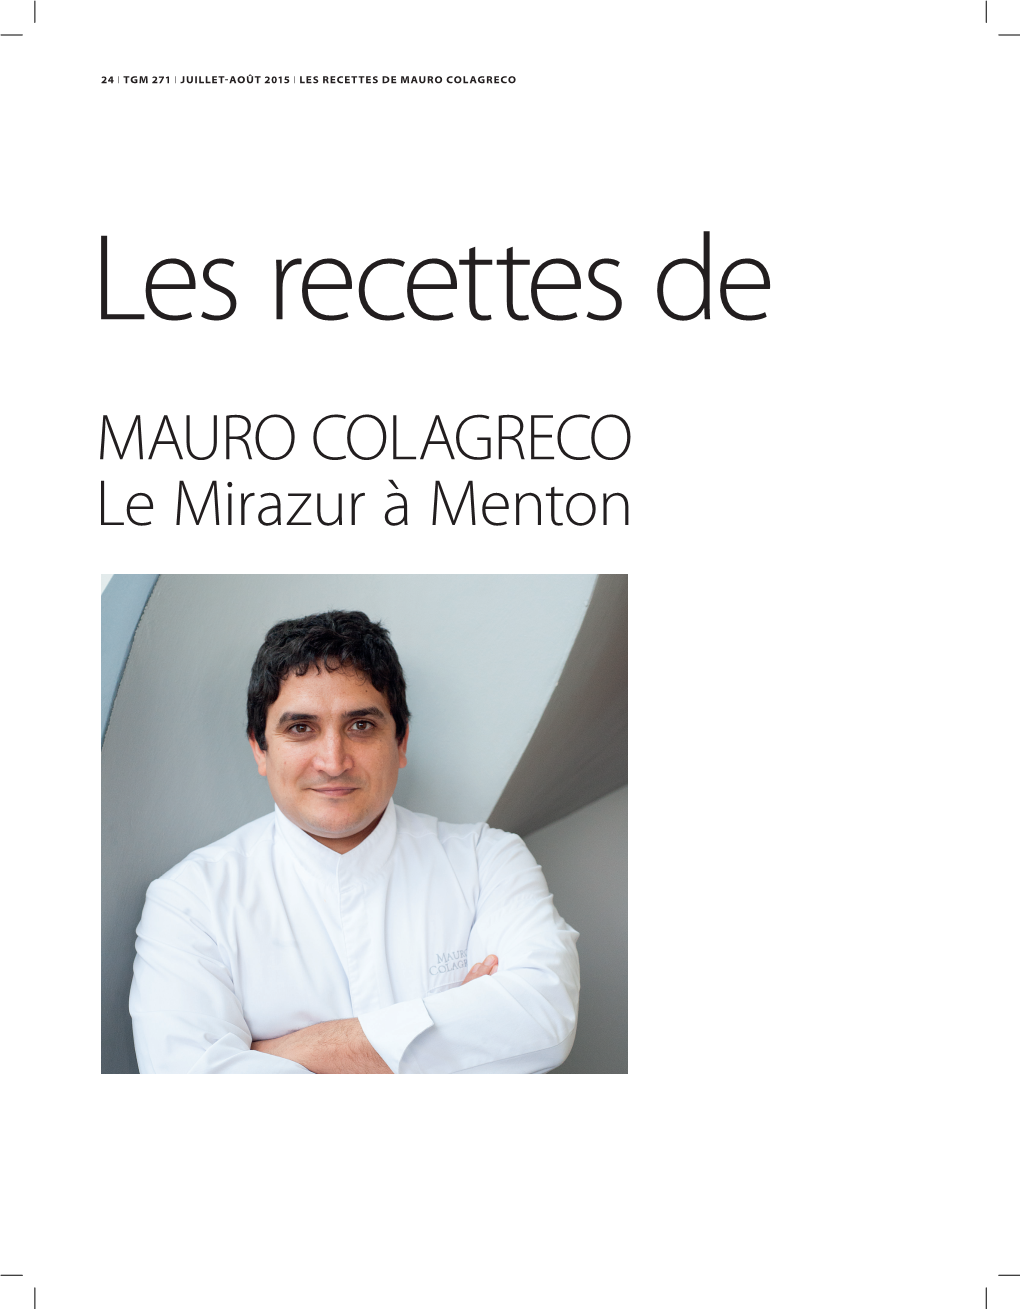 MAURO COLAGRECO Le Mirazur À Menton LES RECETTES DE MAURO COLAGRECO I JUILLET-AOÛT 2015 I TGM 271 I 25